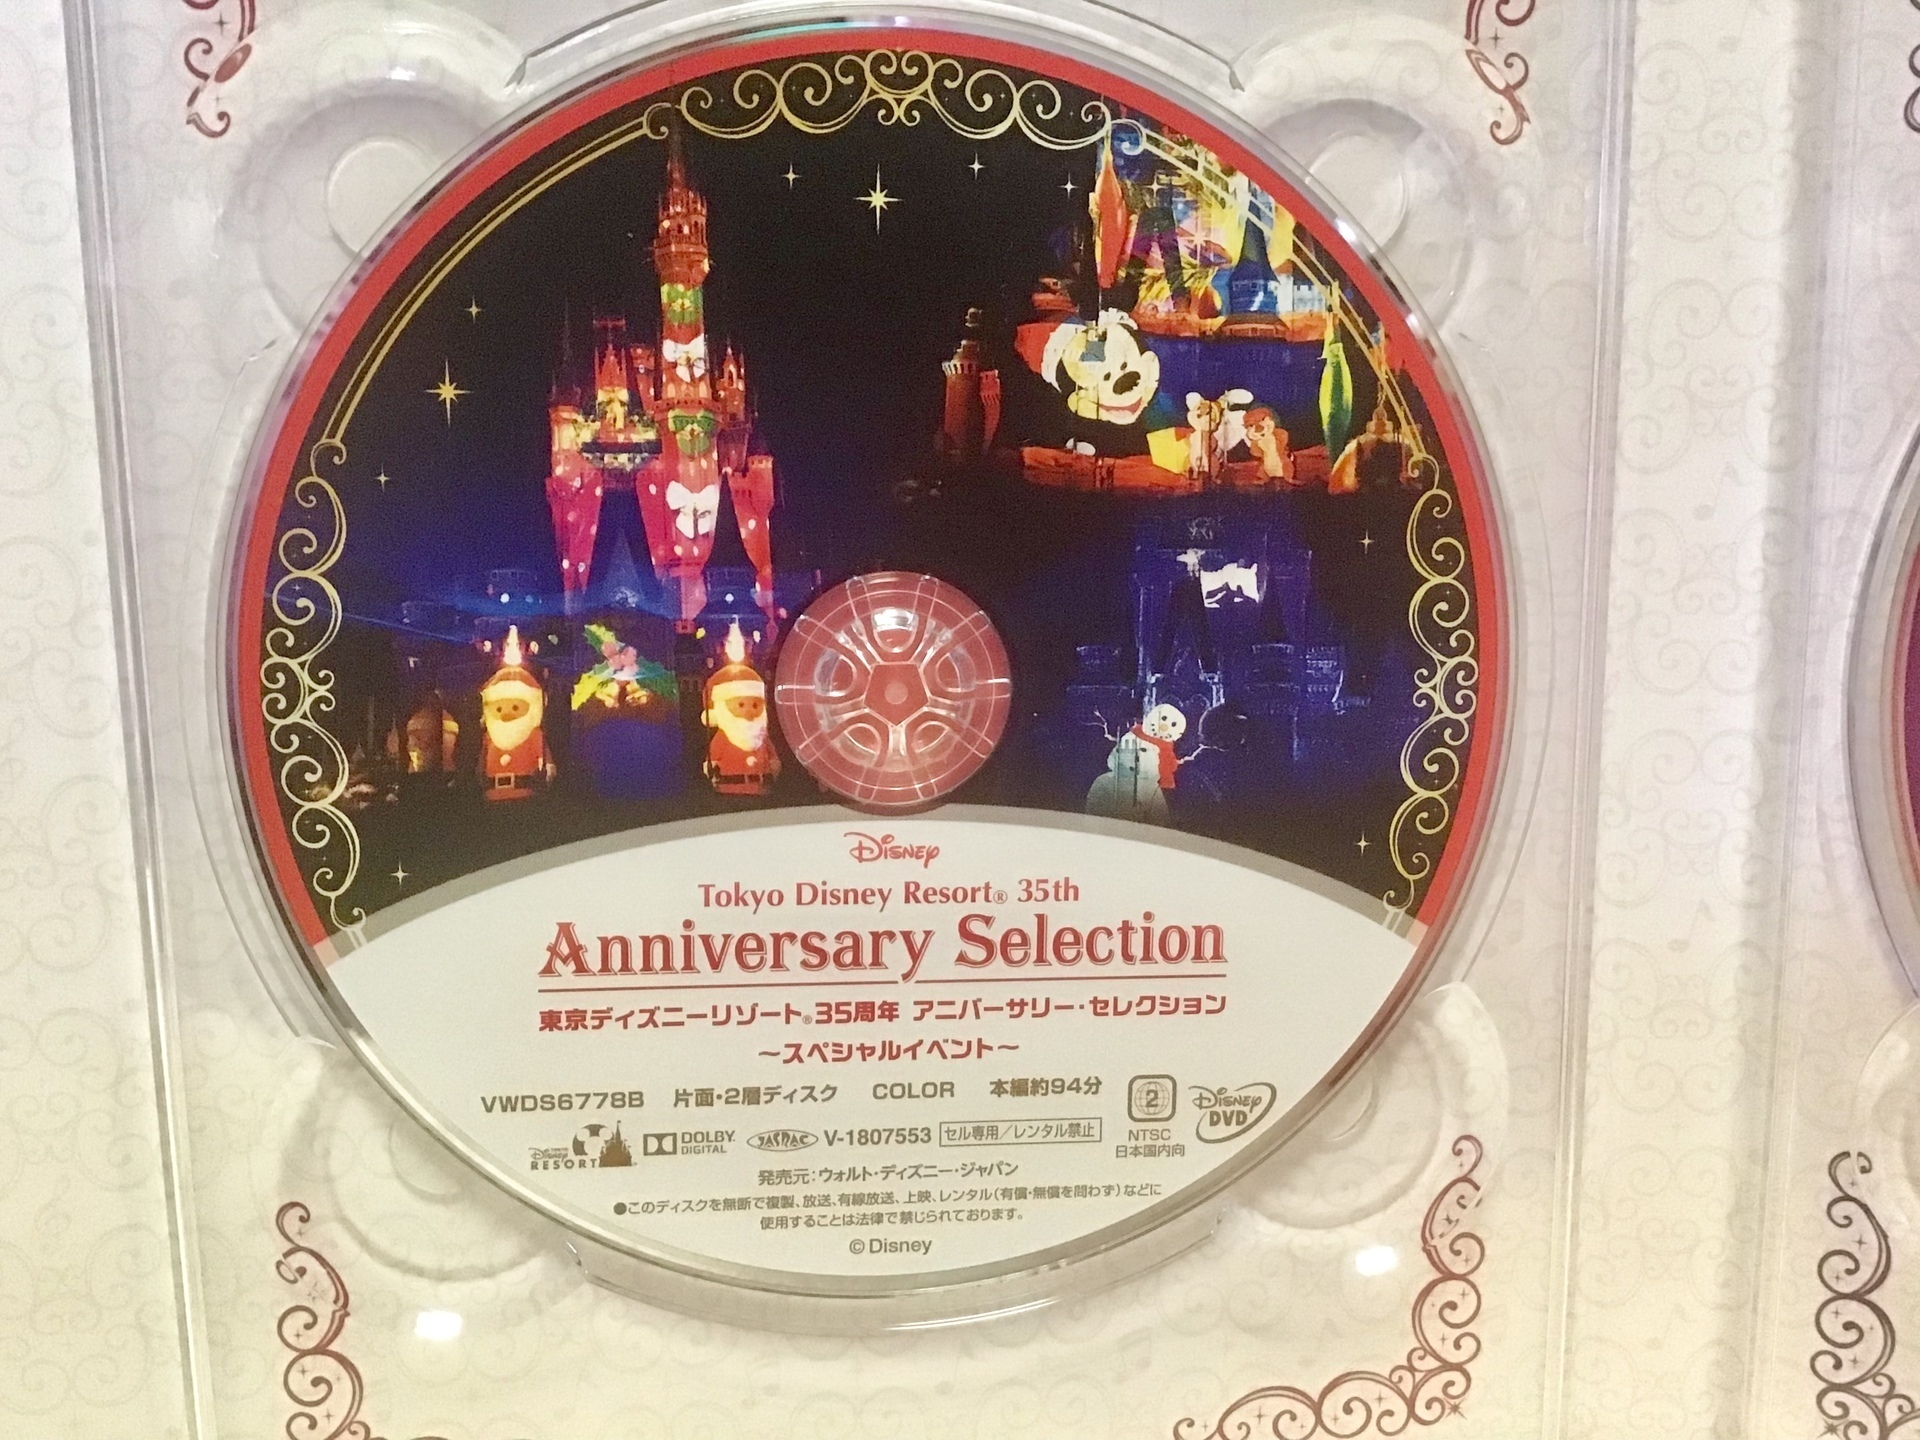 東京ディズニーリゾート35周年アニバーサリーセレクションDVDをついに買ってしまった…(´・ω・｀): 1人ディズニー(*´ω`*)年間パスポート♪